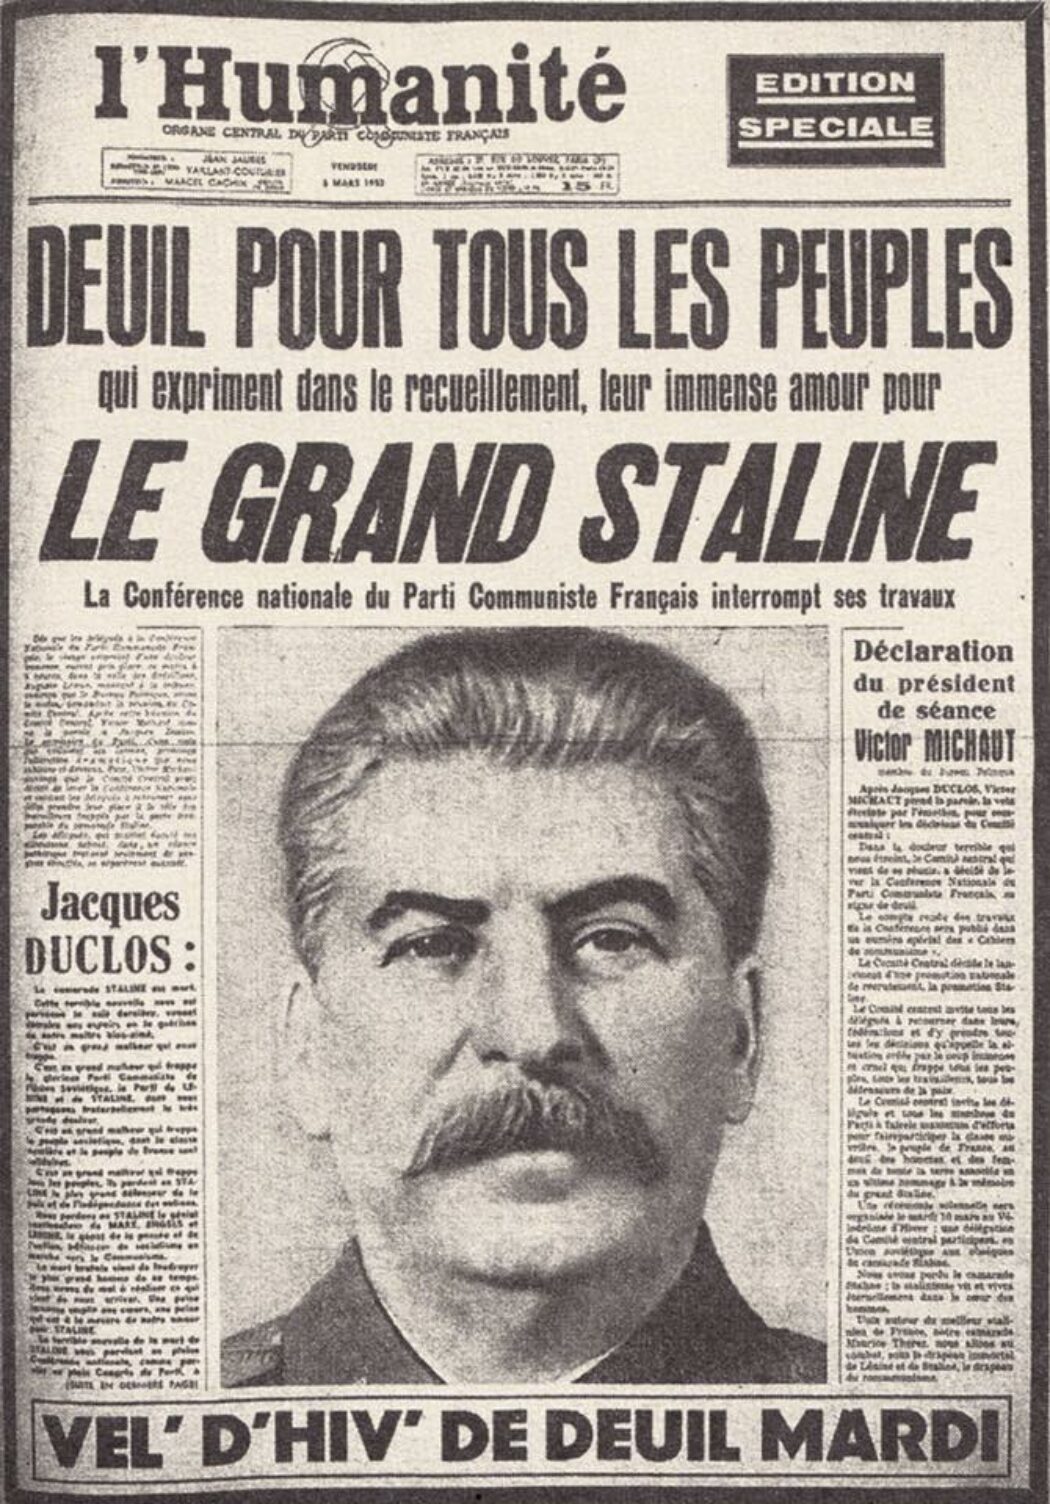 Ces millions de morts sous Staline, dont on ne parle jamais